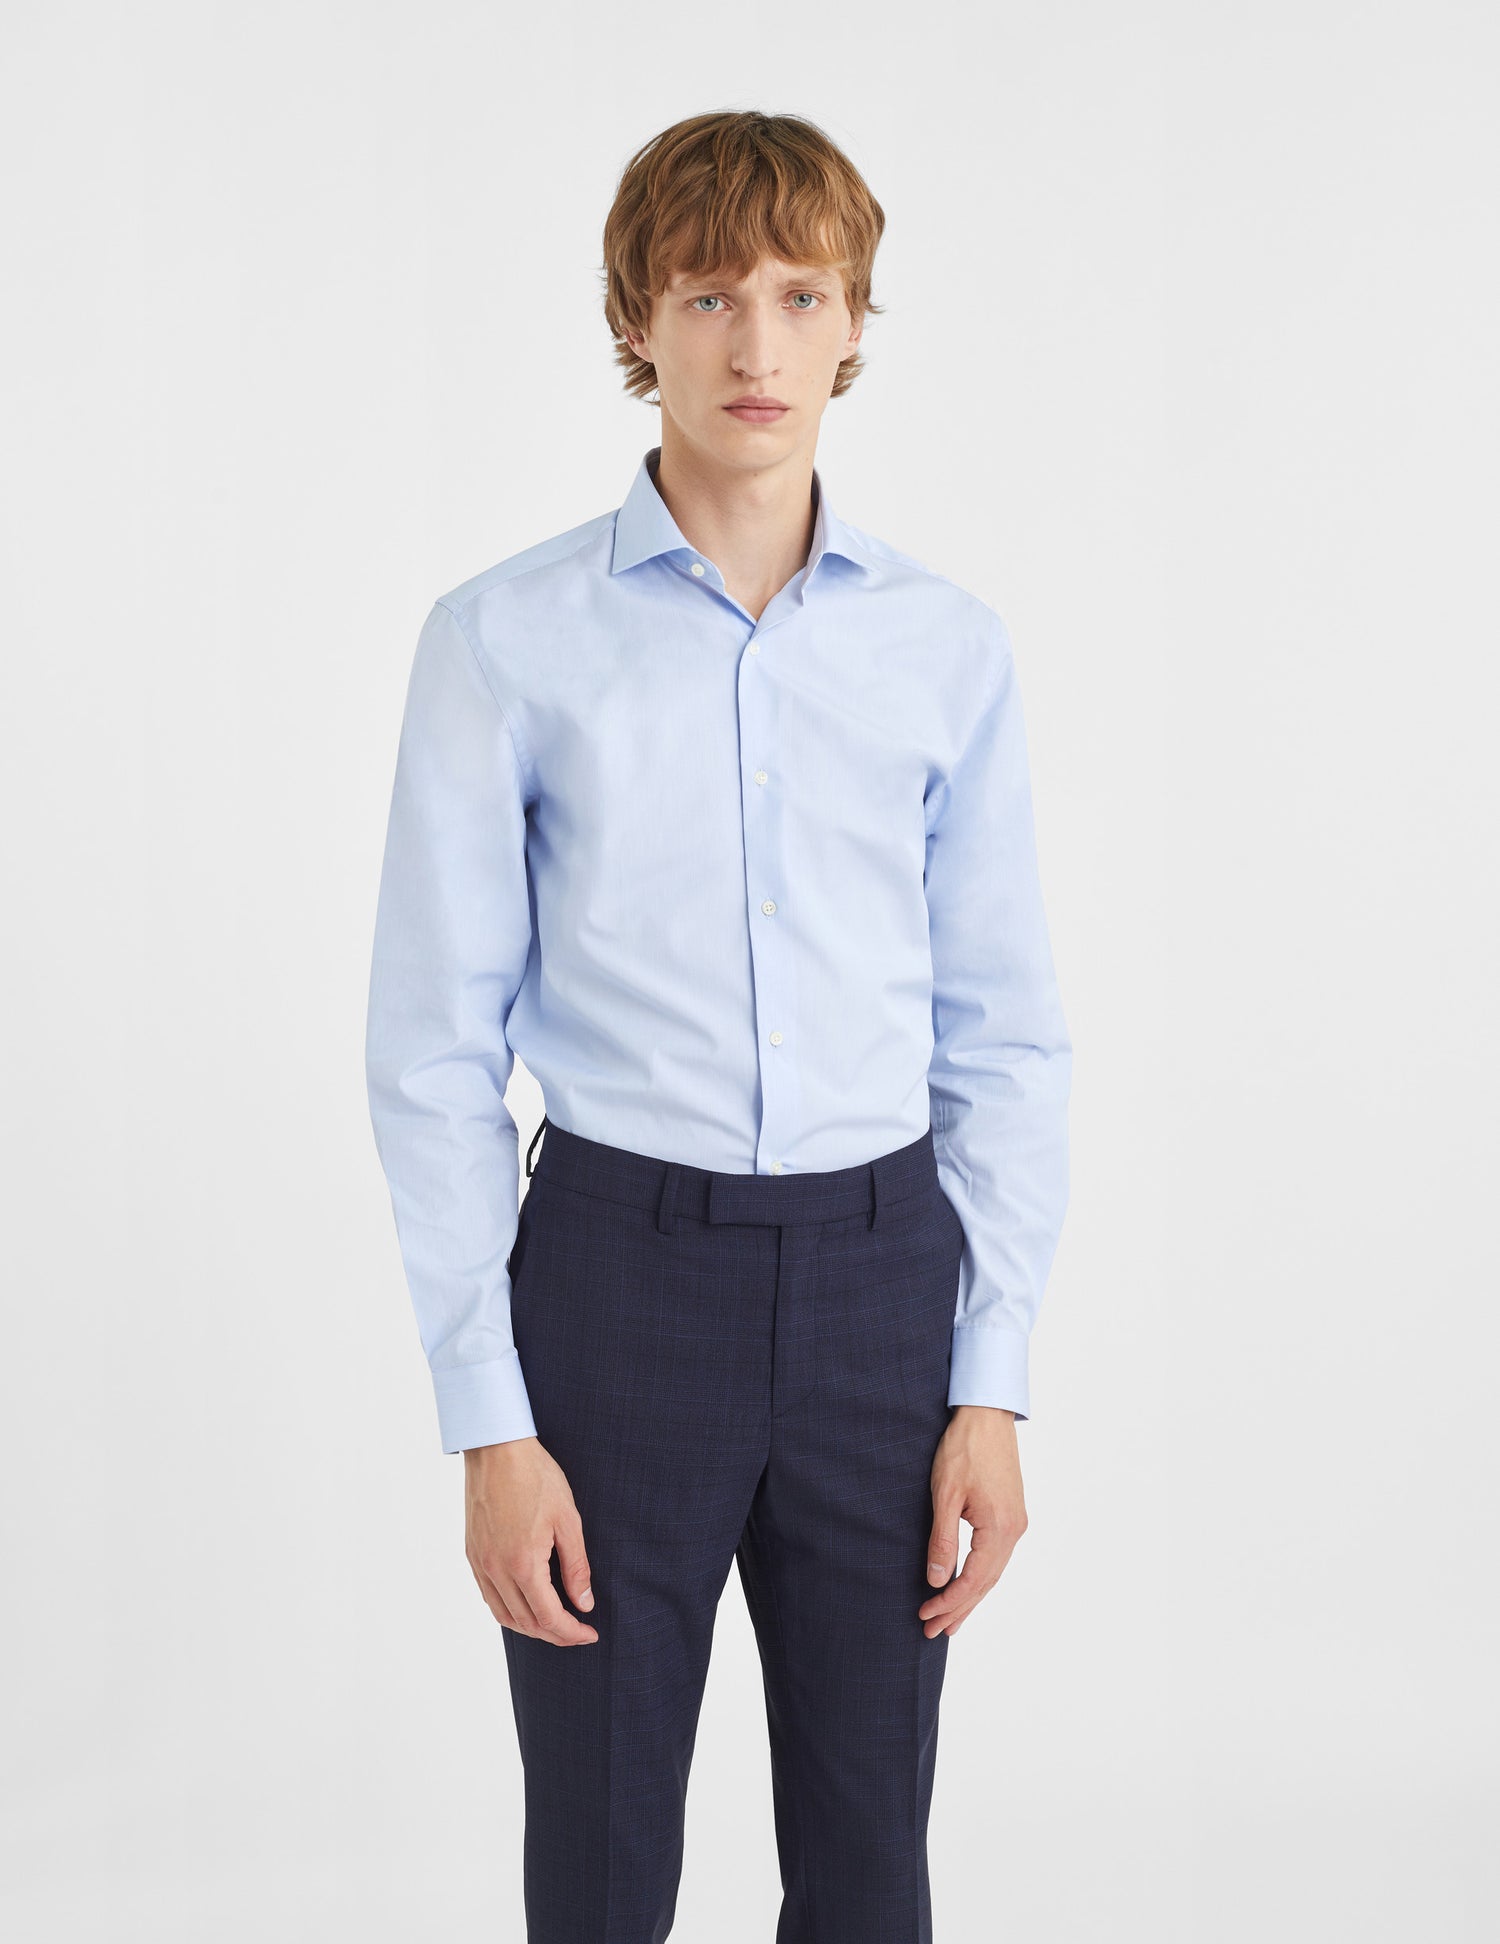 Semi-fitted blue striped shirt - Poplin - Italian Collar#3